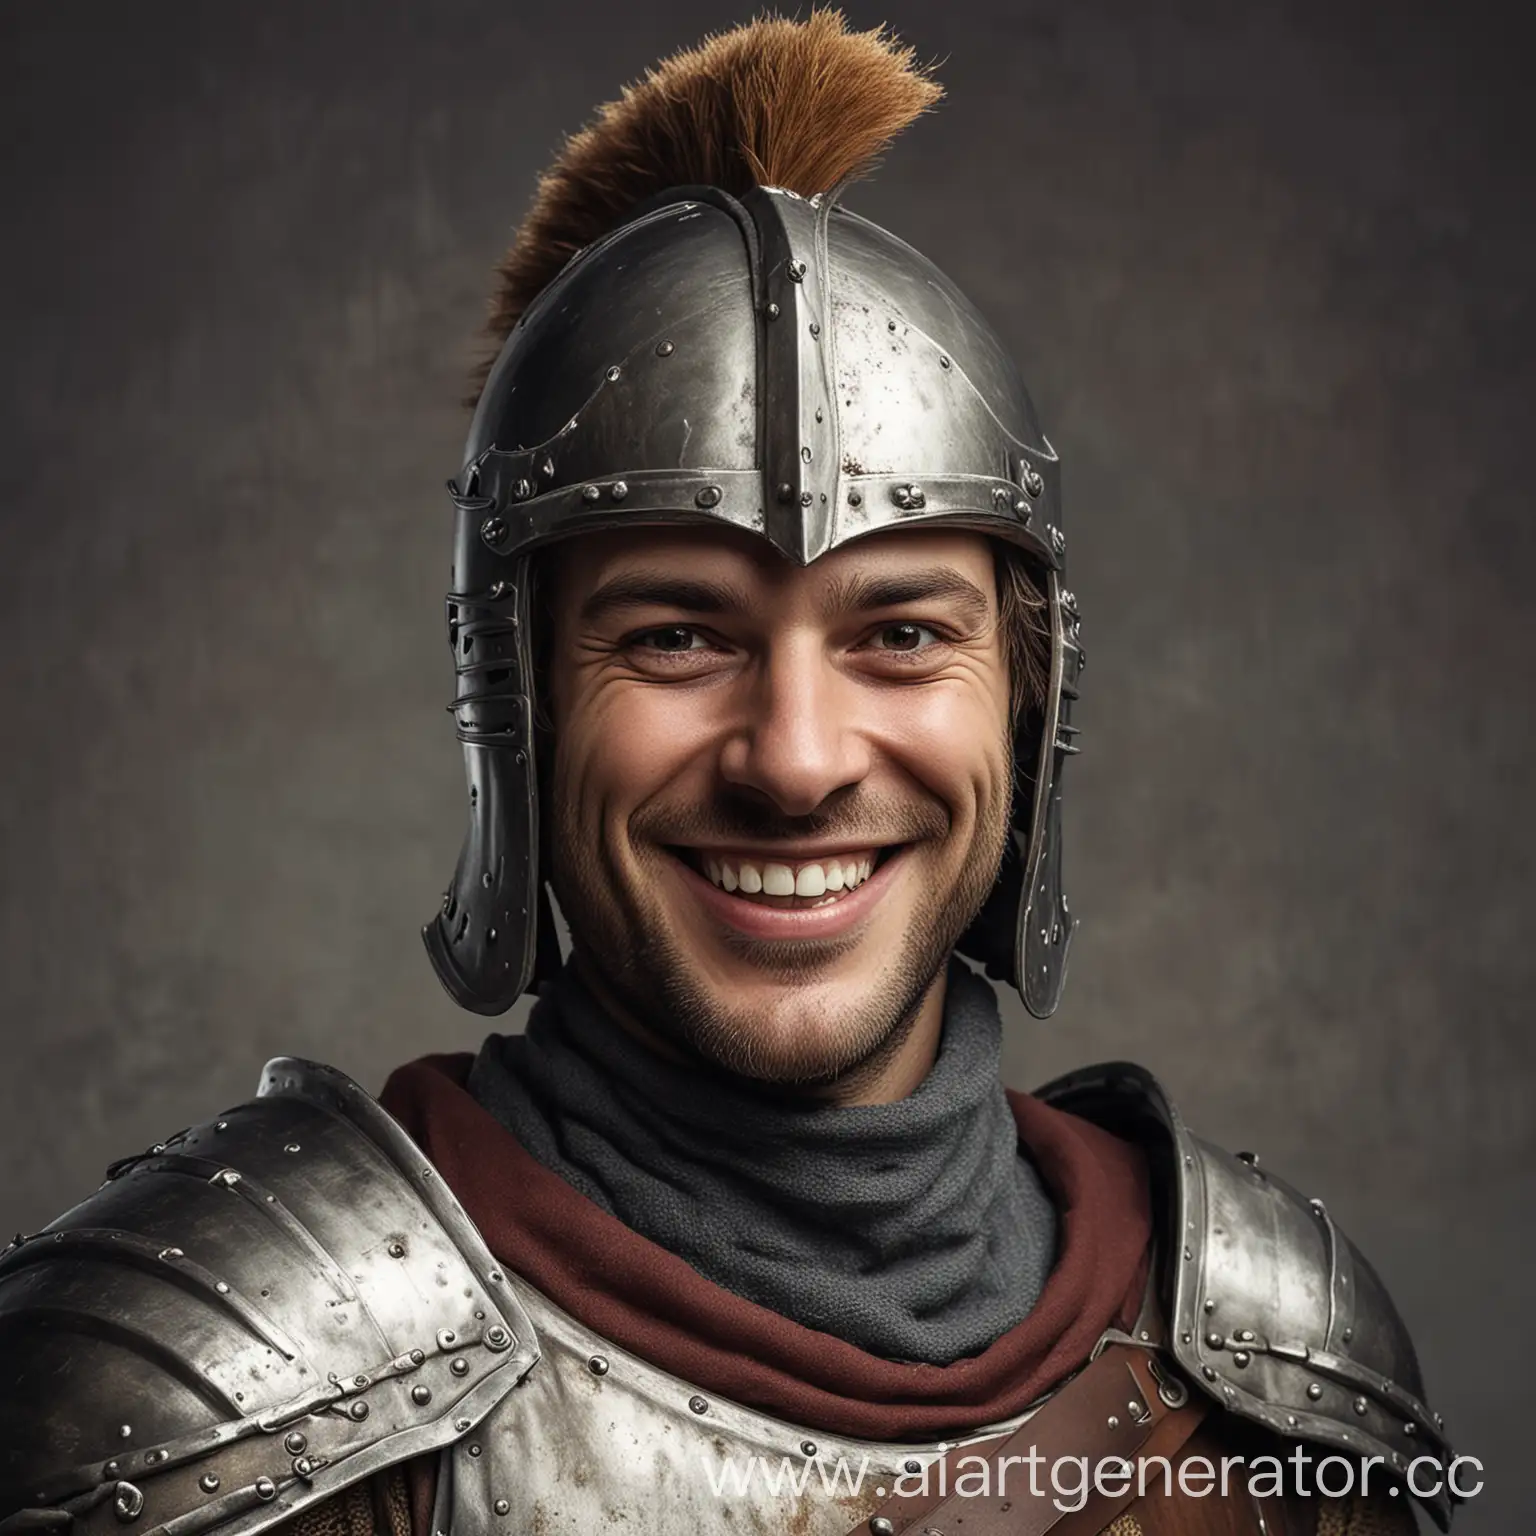 Улыбающийся рыцарь в открытом шлеме

